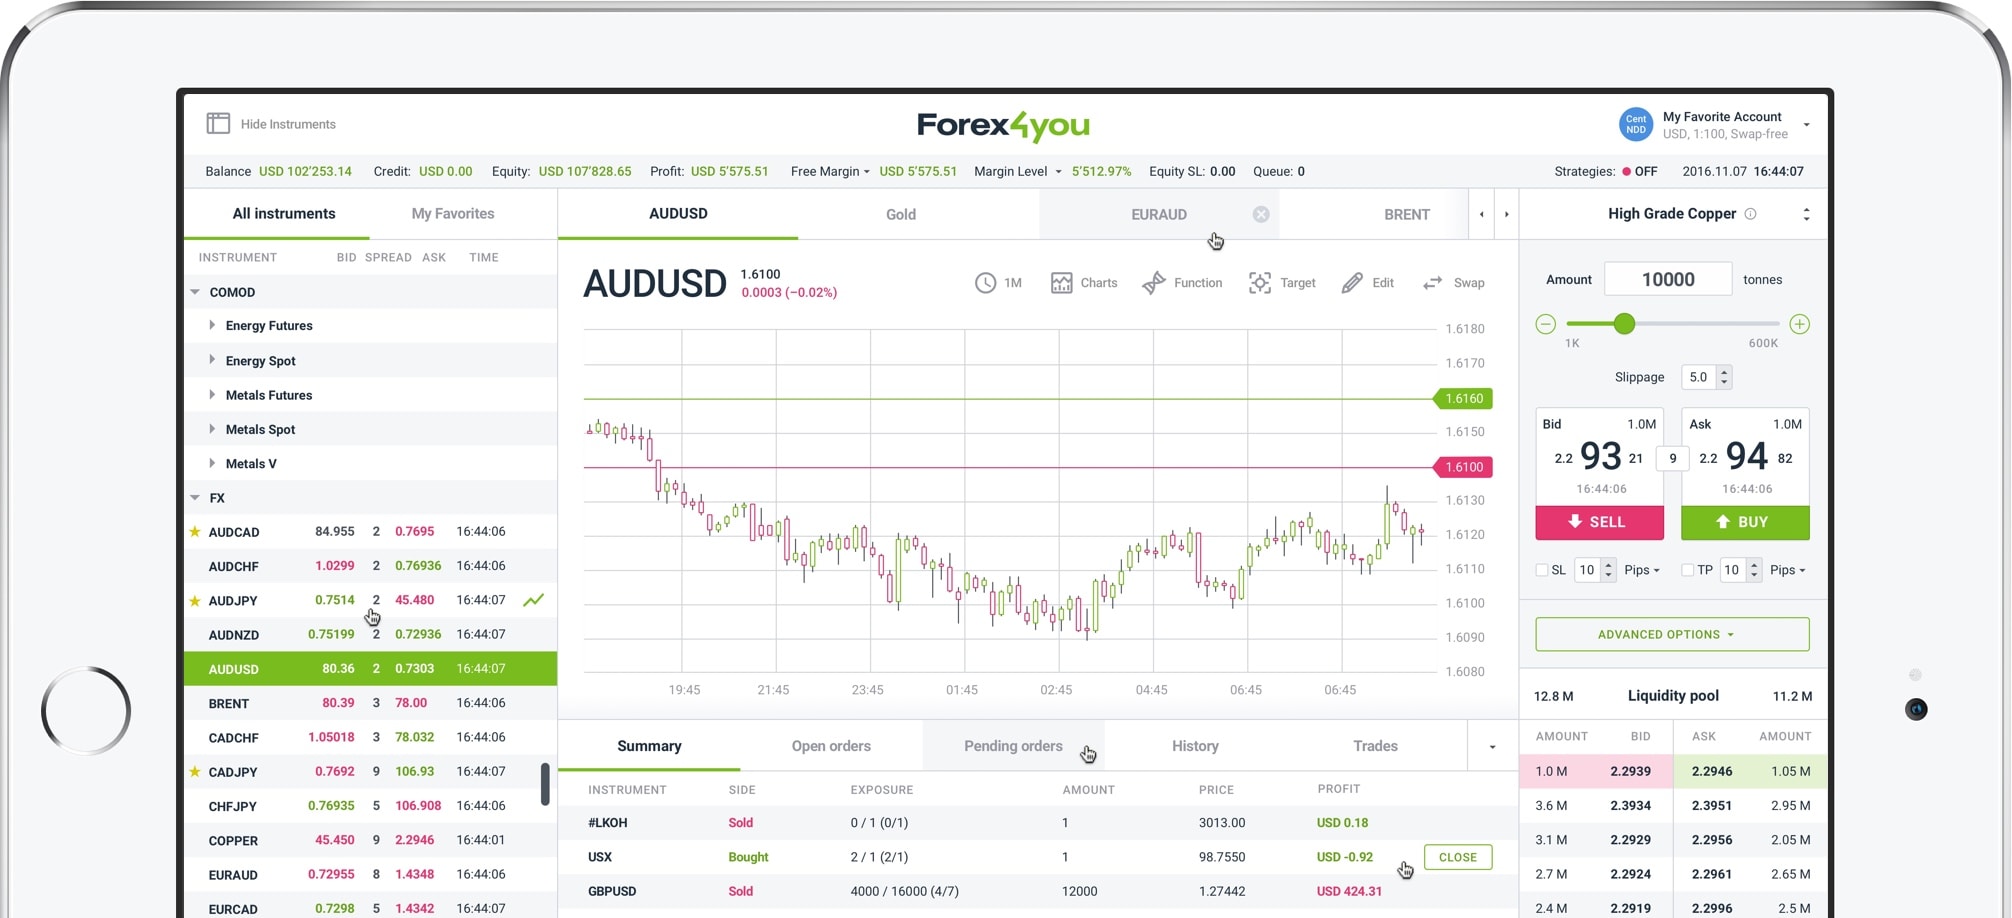 Online Forex Trading Platforms Desktop, Mobile, WebTrader